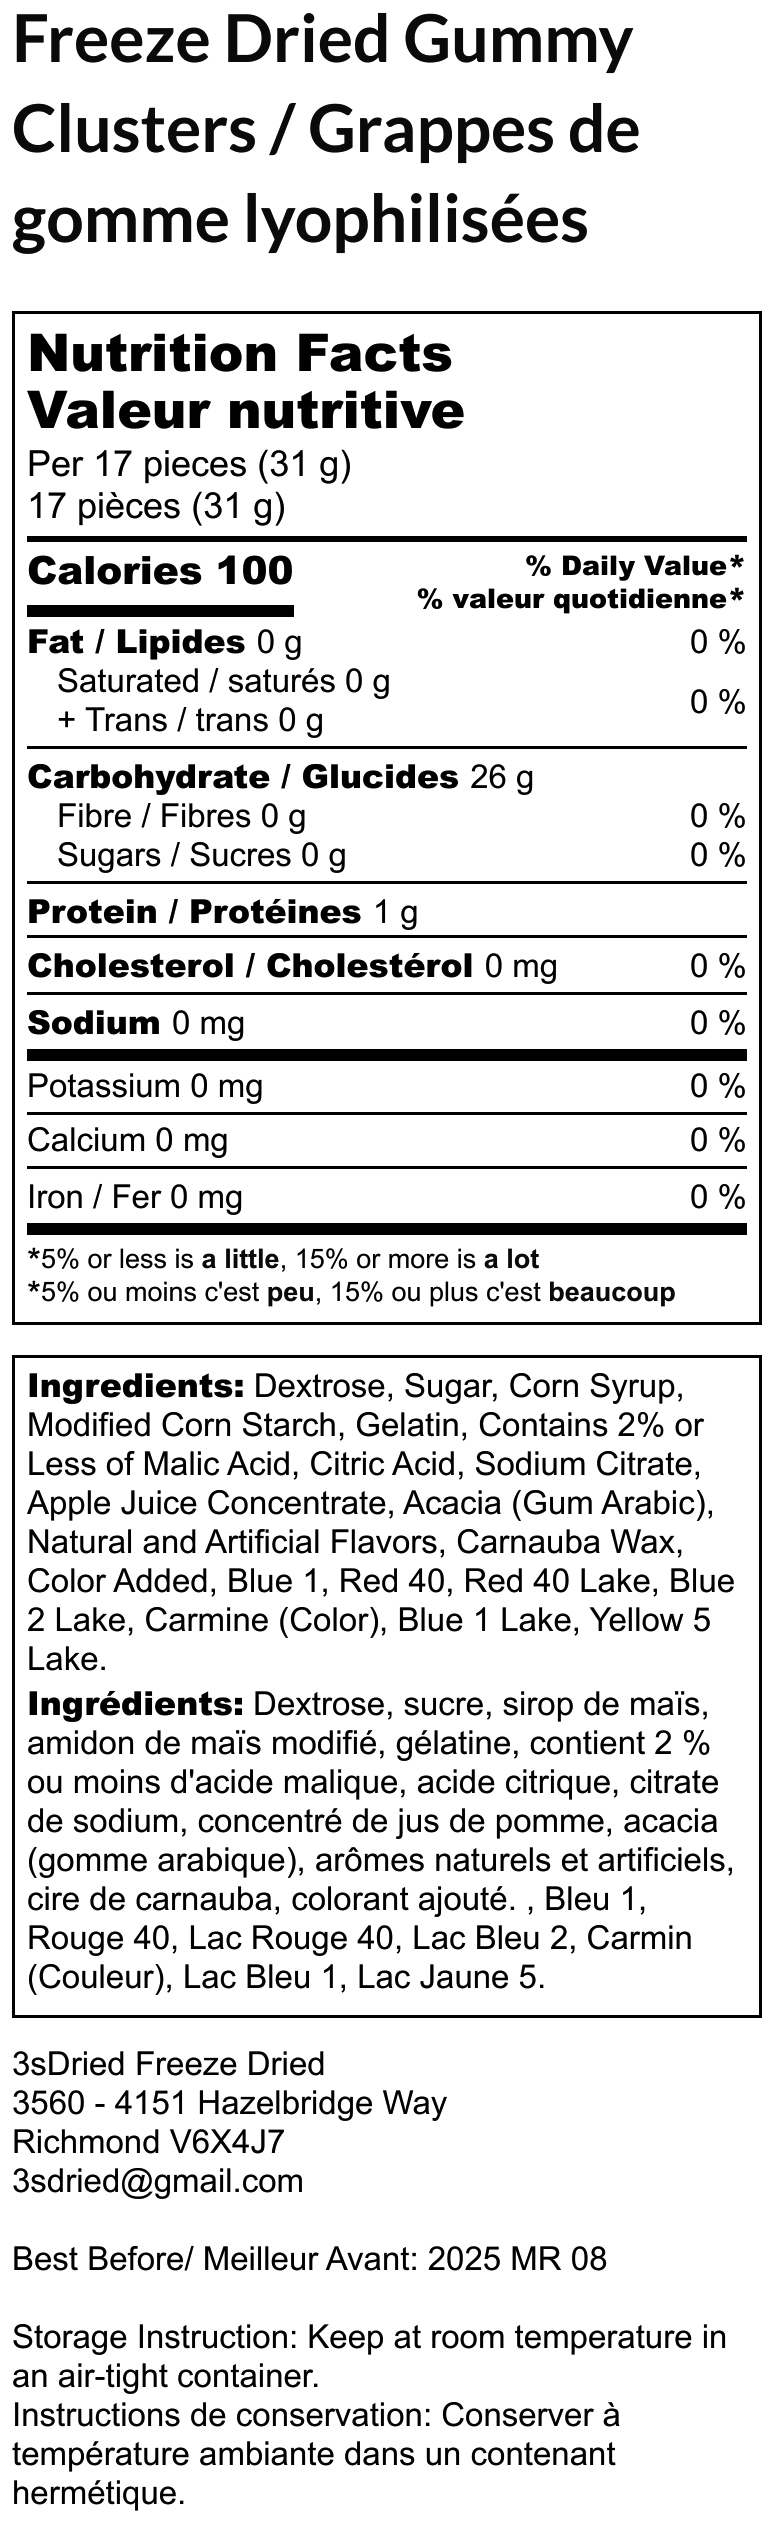 Freeze Dried Gummy Nerd Clusters - Delicious Nerds Candy Flavor description list